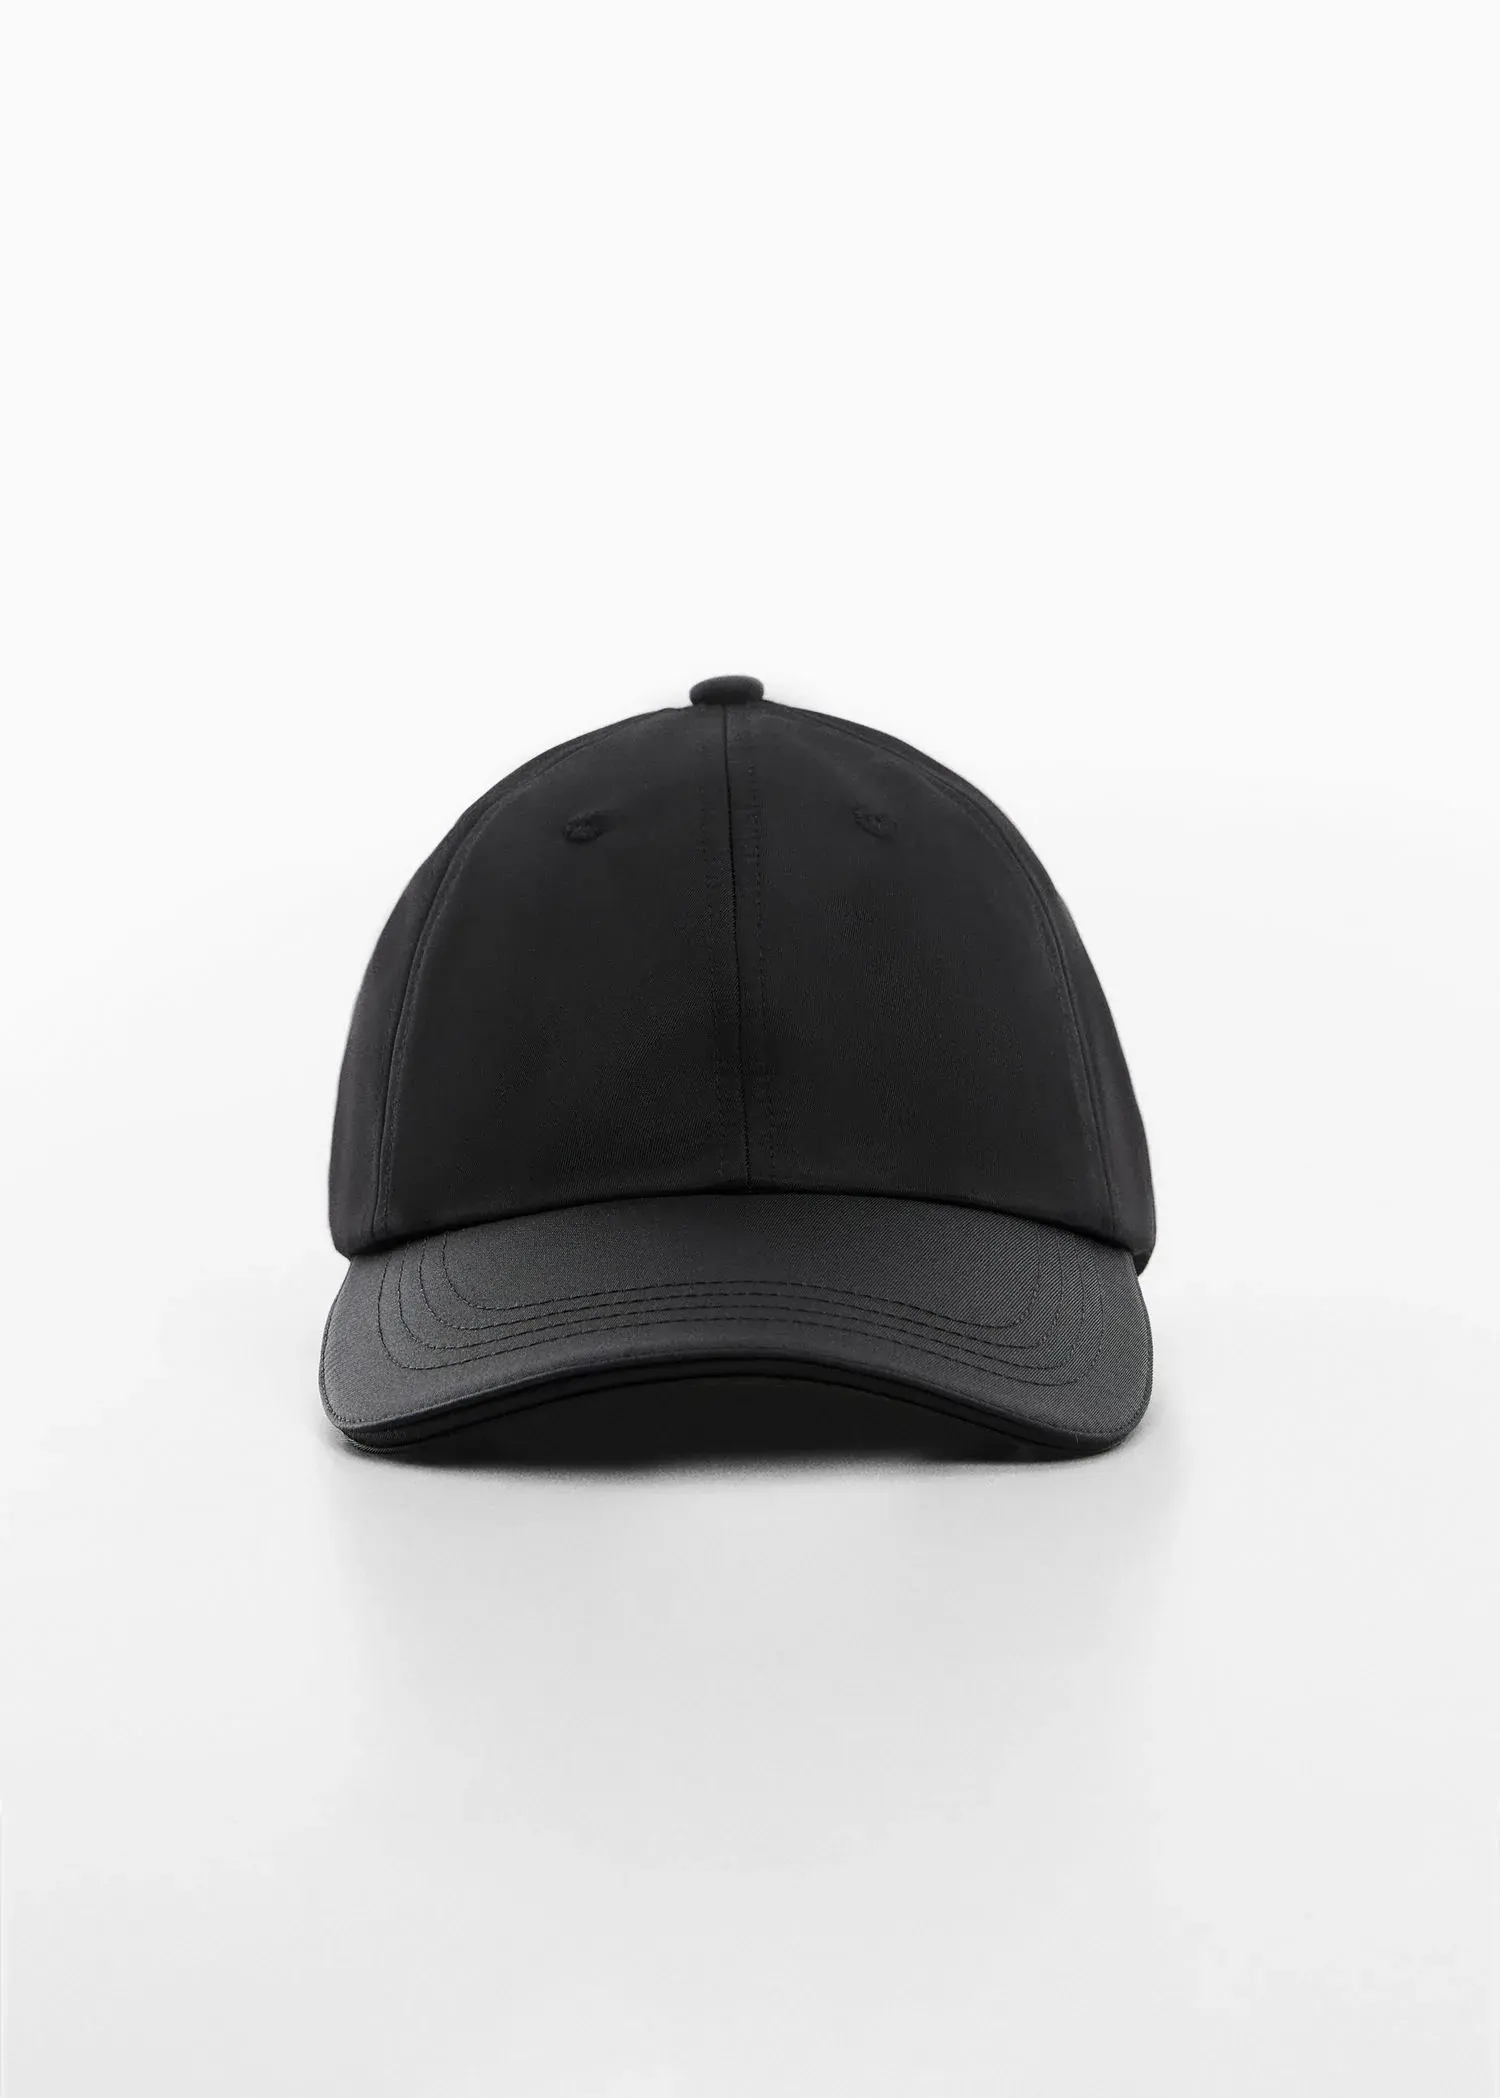 Mango Soft visor cap. 1